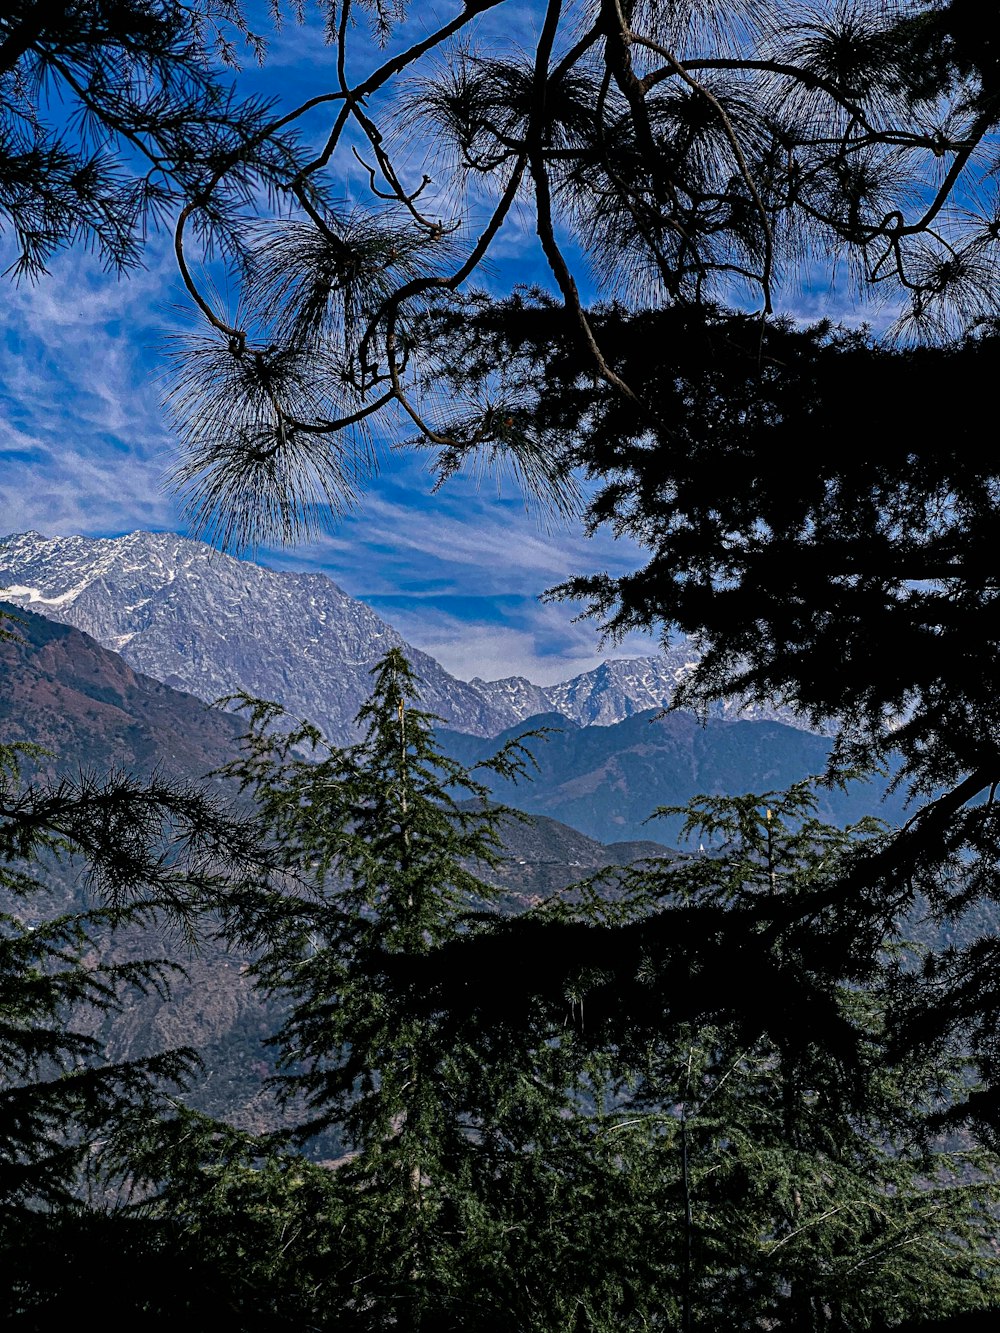 a view of a mountain range through some trees